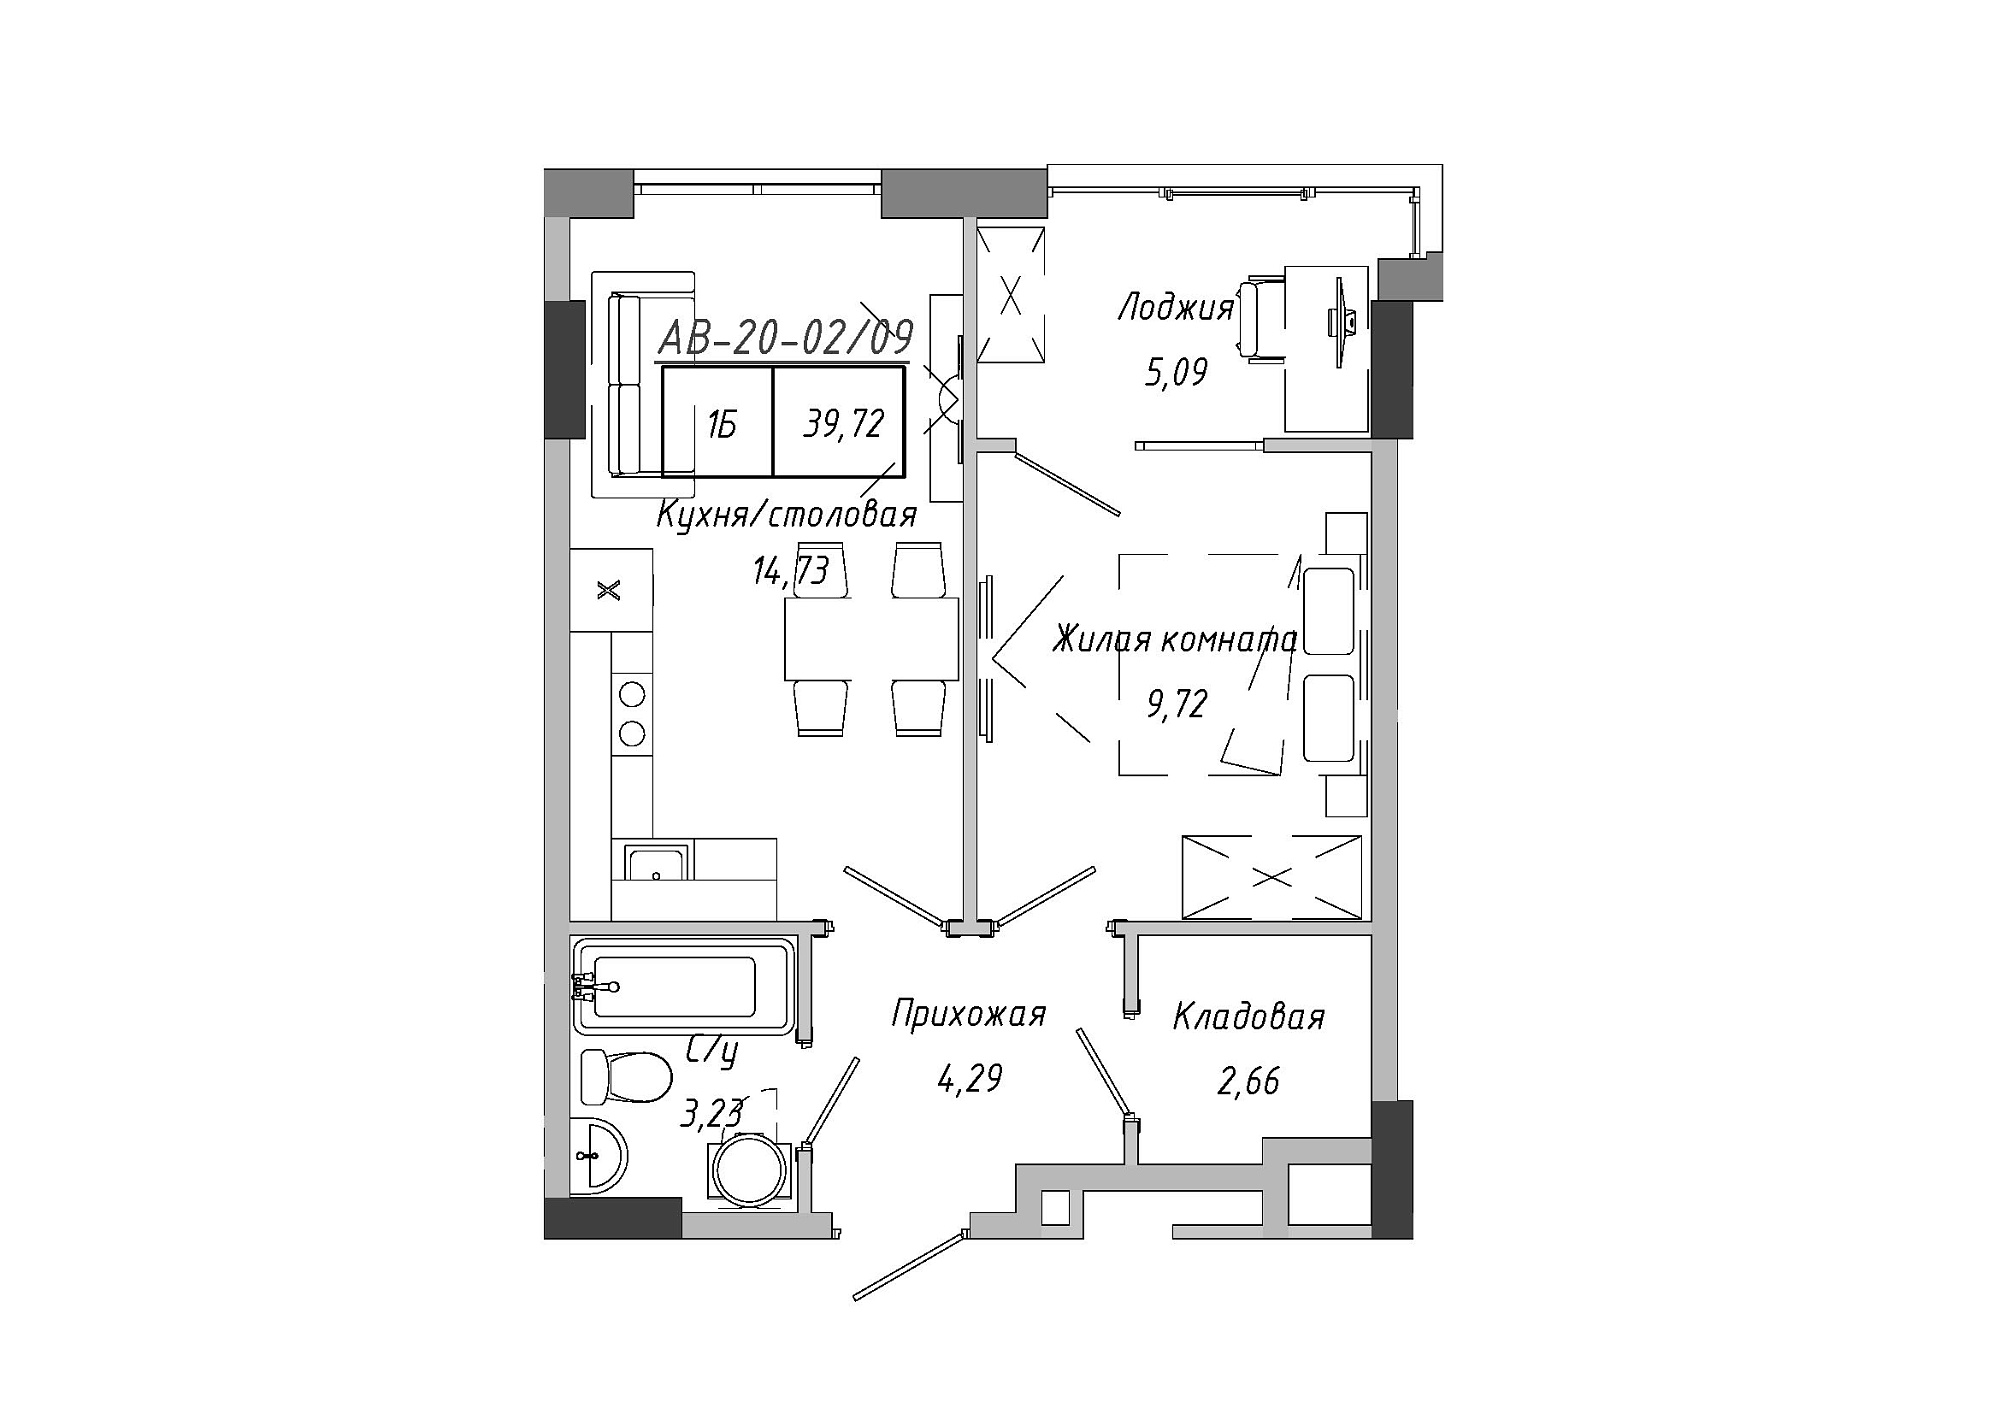 Планировка 1-к квартира площей 37.59м2, AB-20-02/00009.